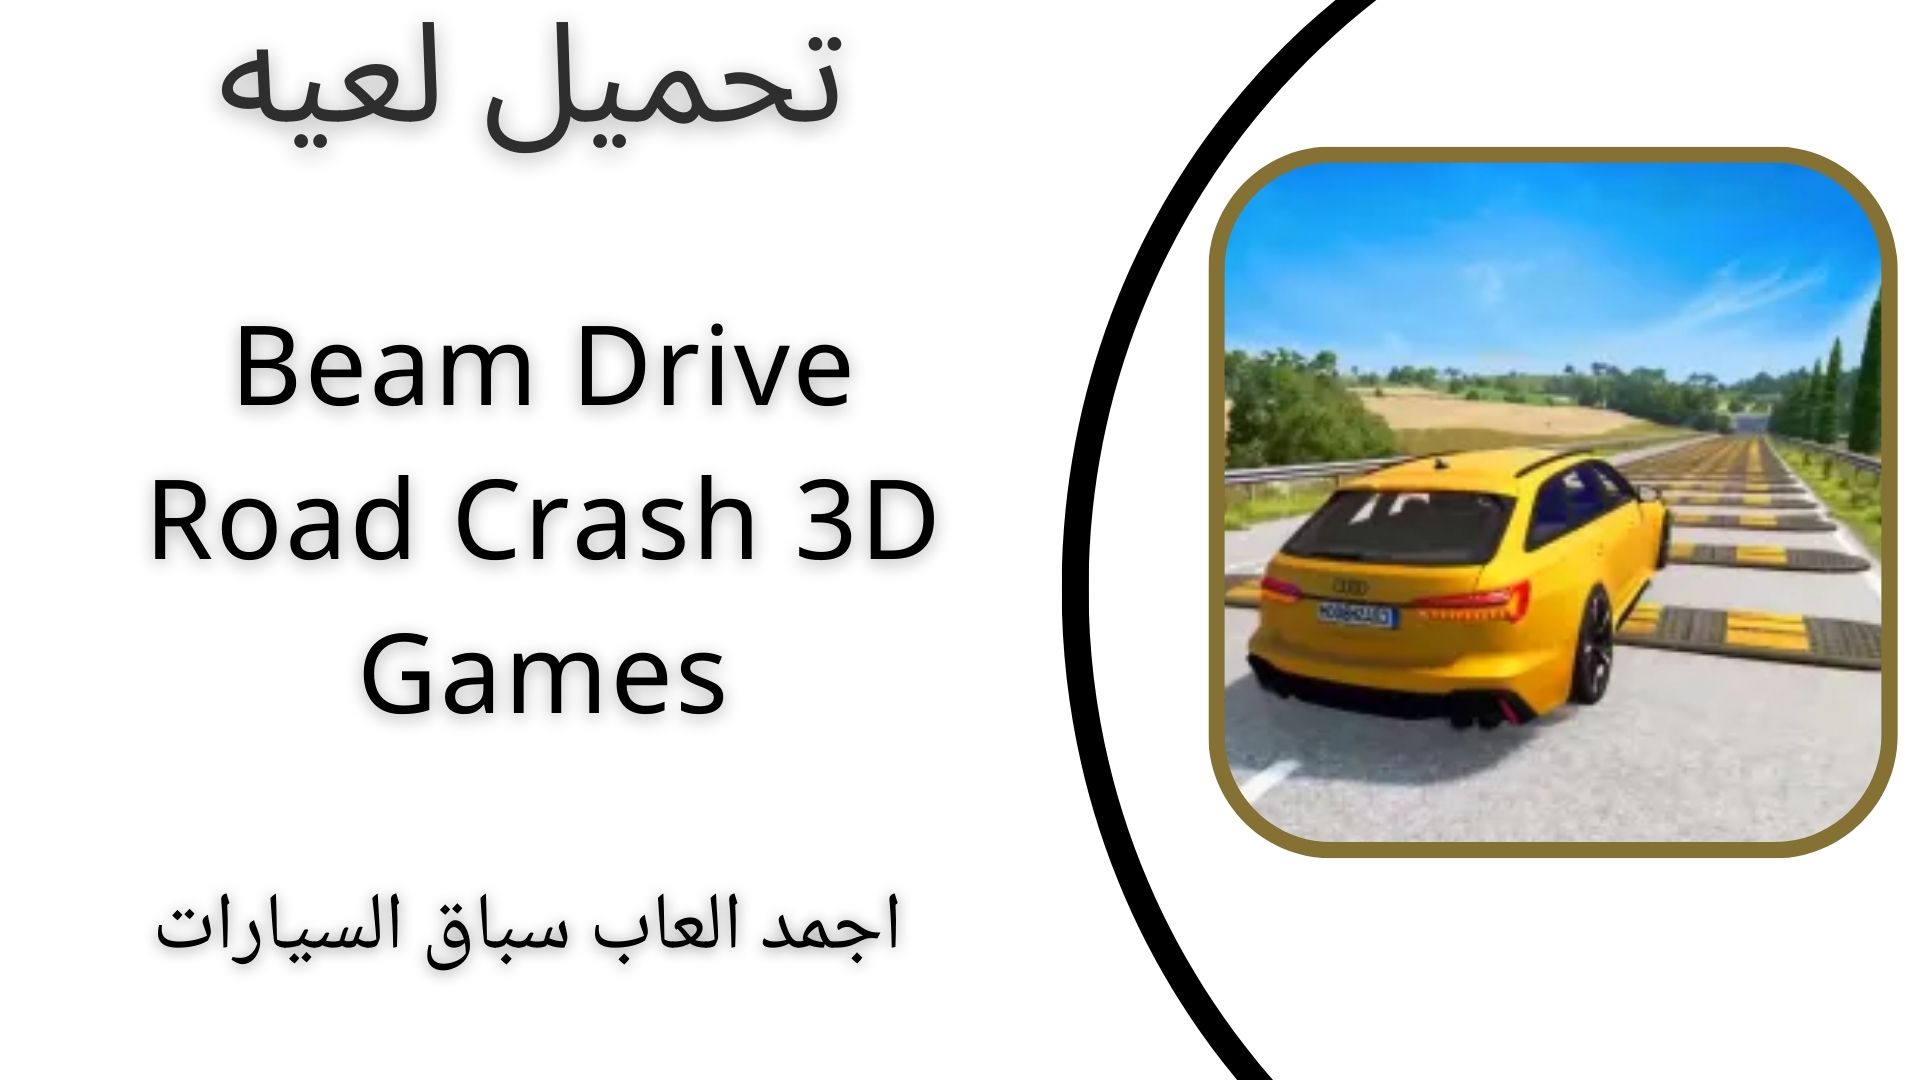 تحميل لعبة Beam Drive Road Crash 3D Games apk للاندرويد والايفون اخر اصدار 2024 مجانا